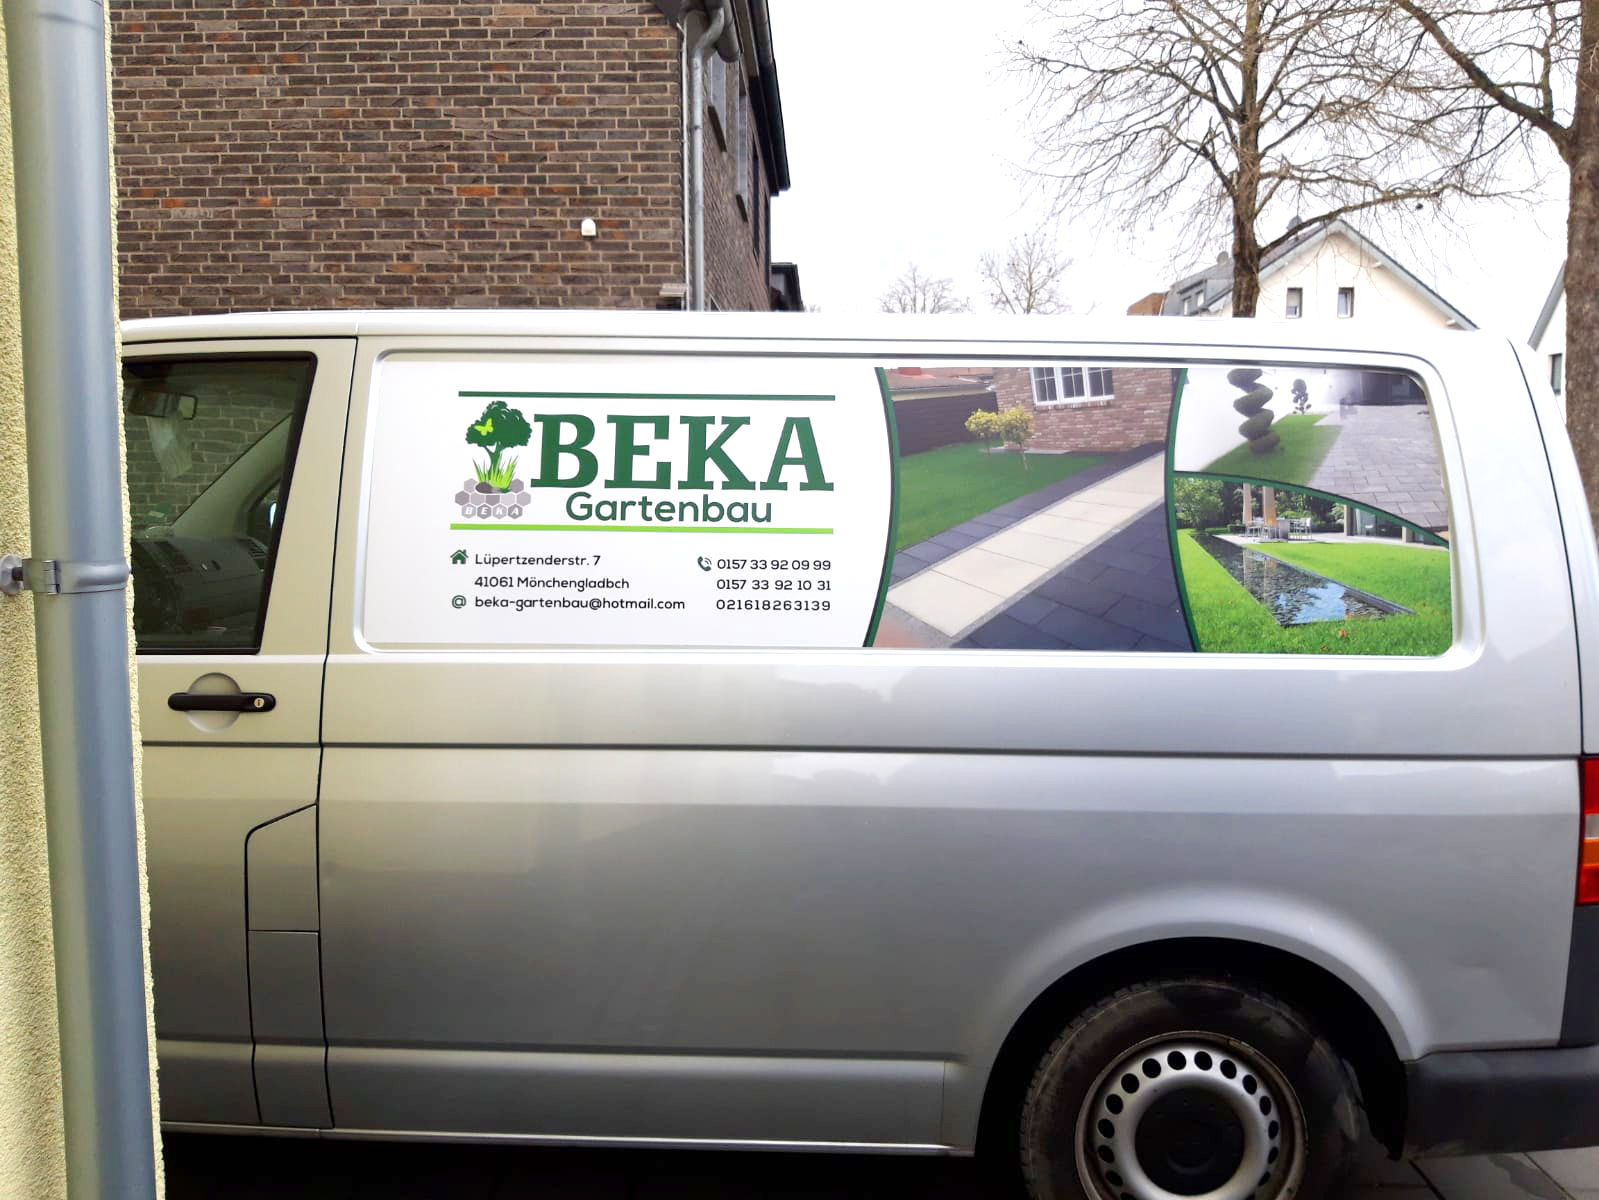 Fahrzeug von BEKA Gartenbau, ihr Partner im Gartenbau in Mönchengladbach und Umgebung